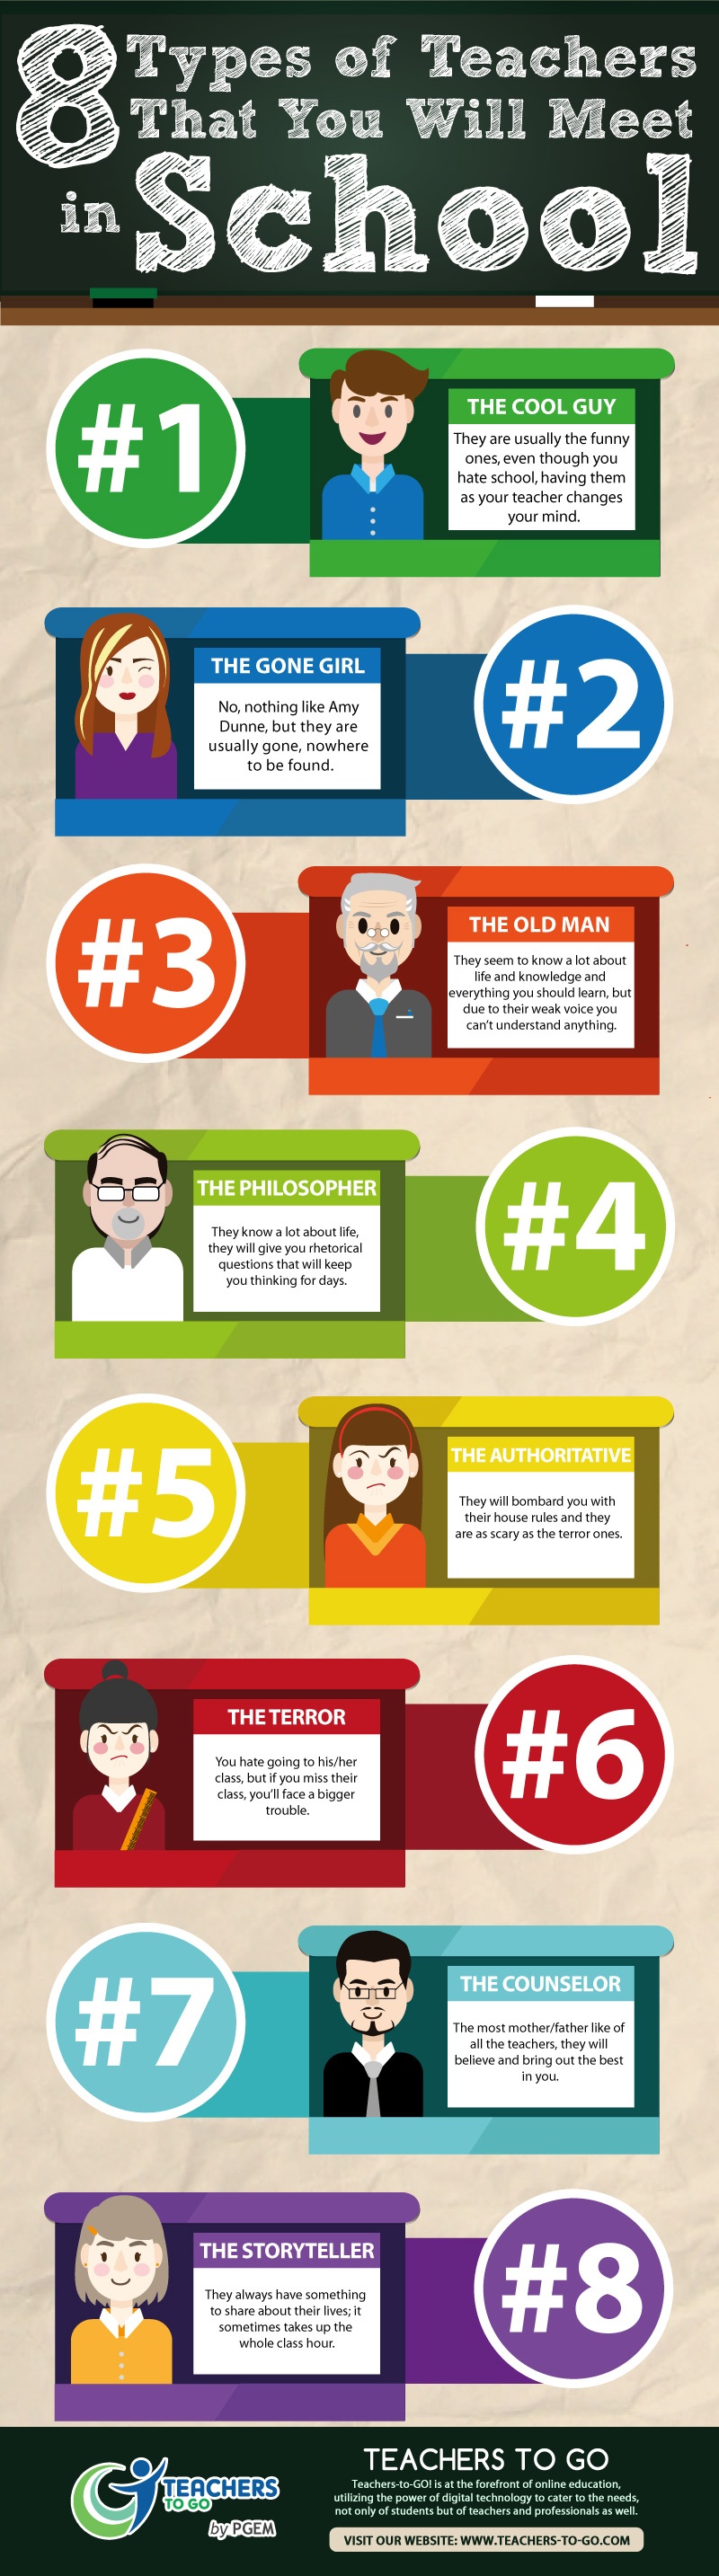 8 Types of Teachers Students Meet in School Infographic